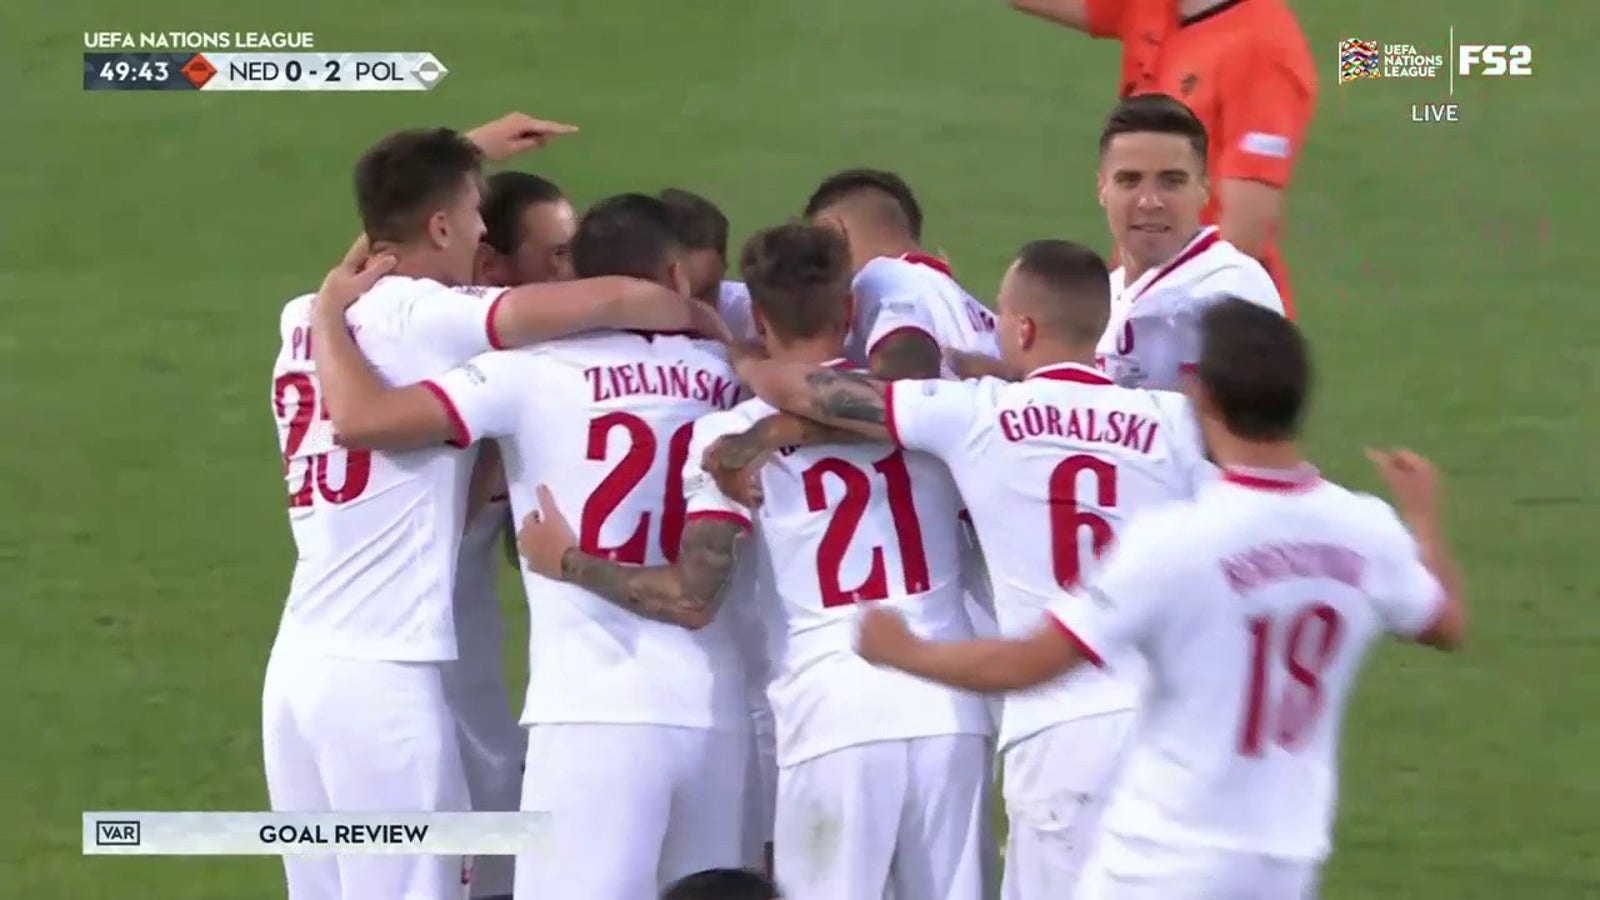 Piotr Zielinski scores after VAR reverses offsides call, Poland lead Netherlands 2-0